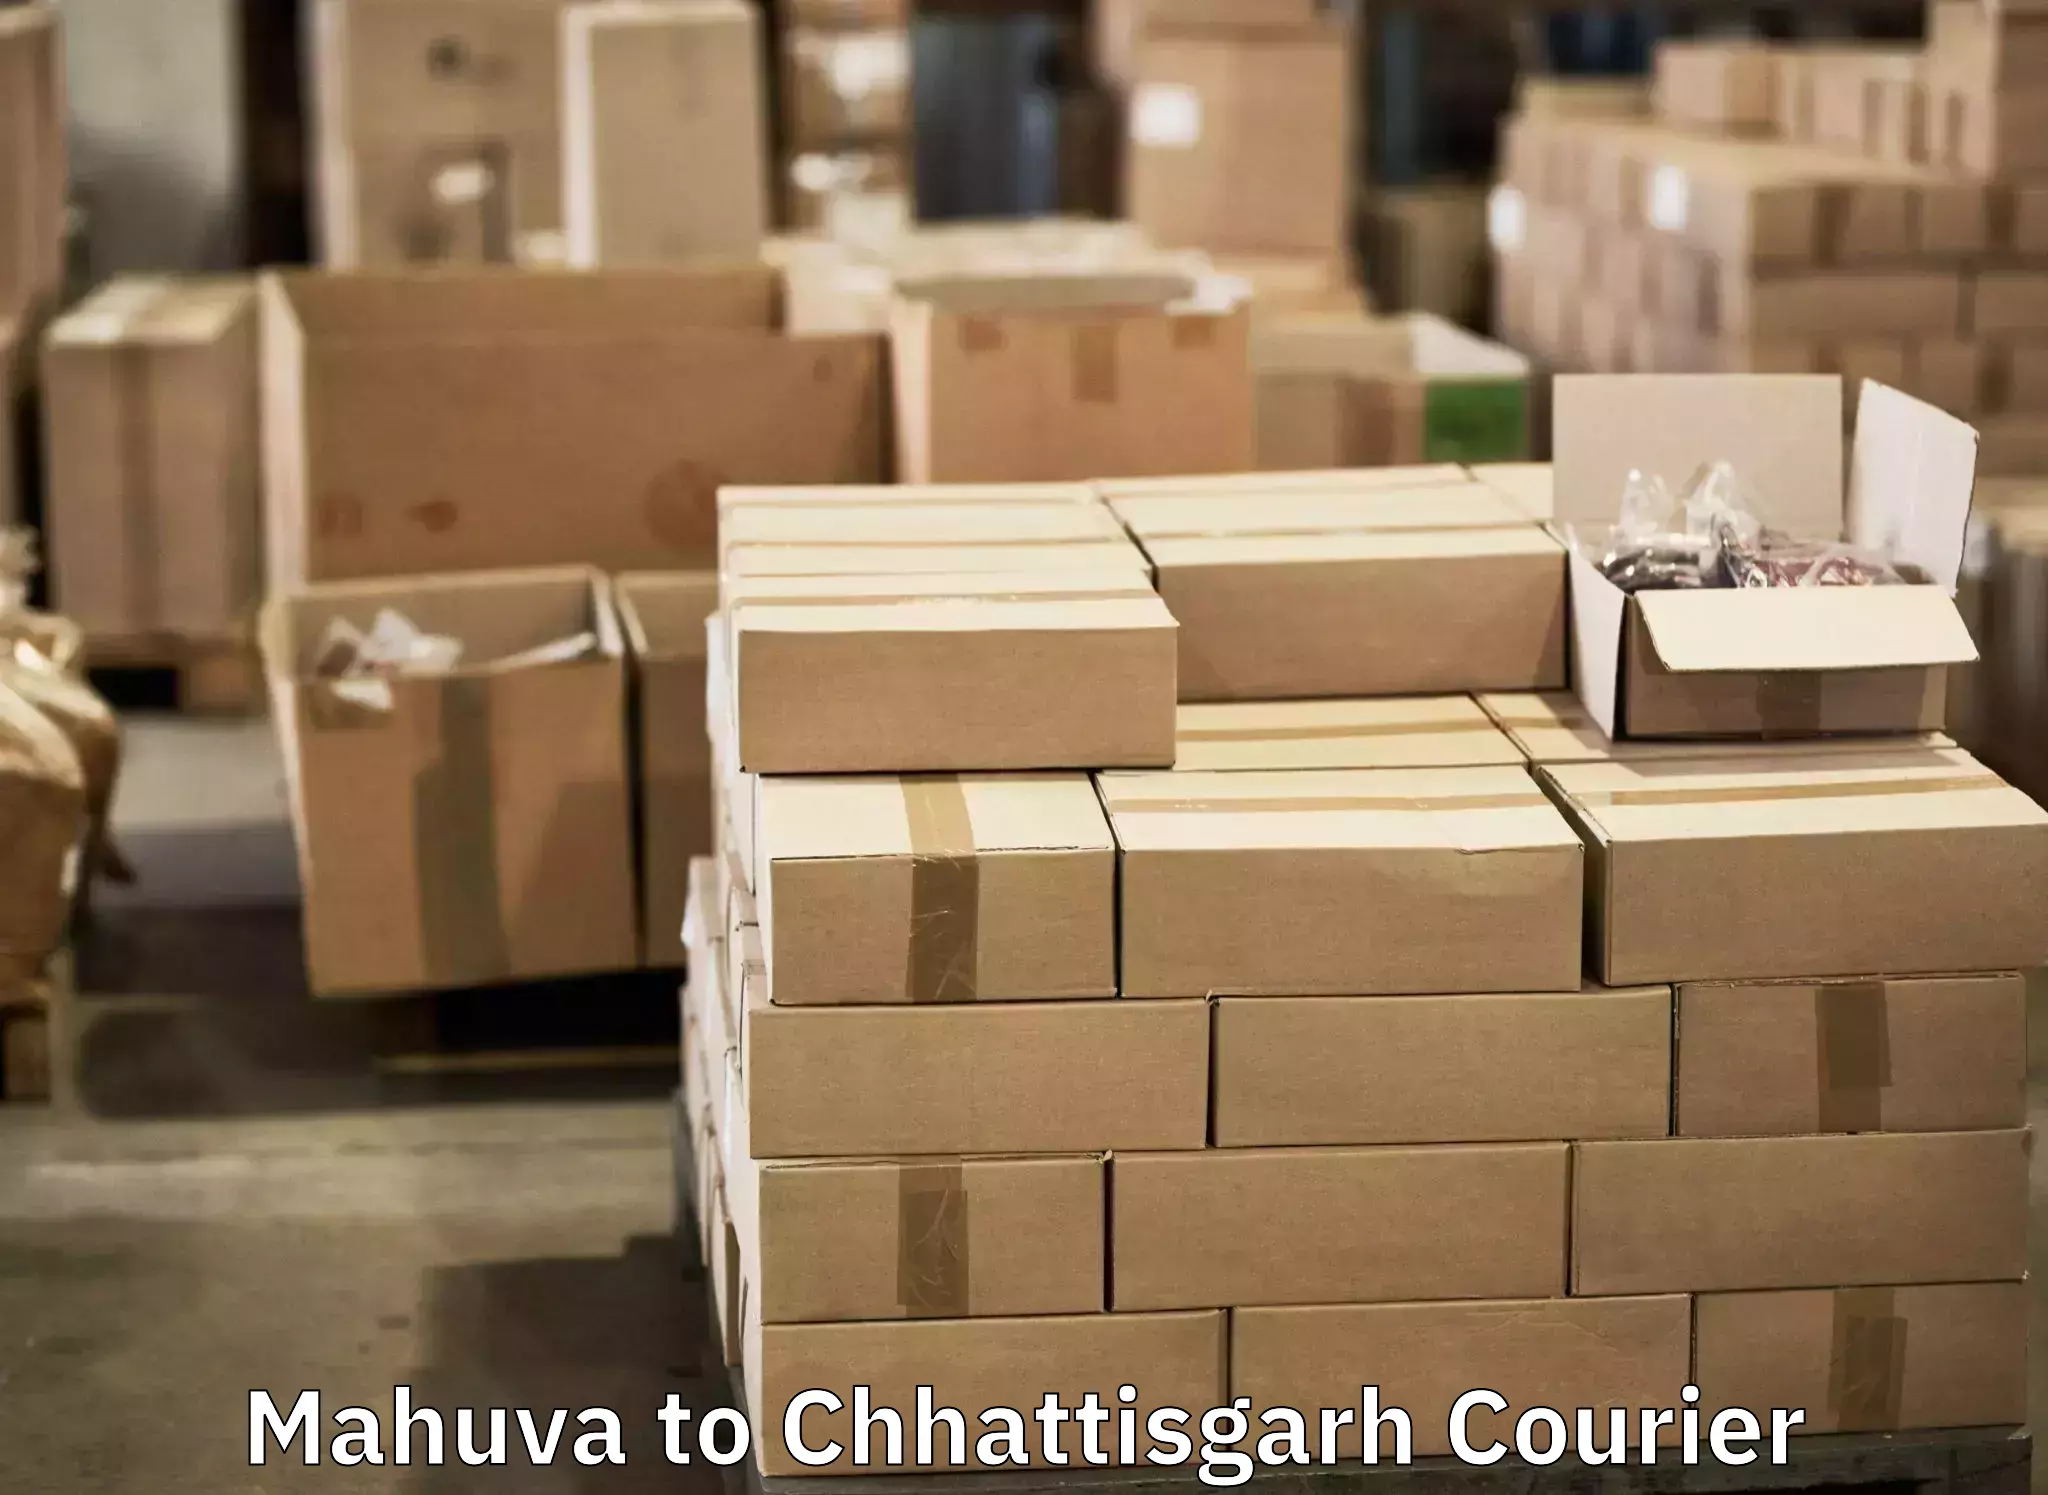 Baggage delivery optimization Mahuva to Bijapur Chhattisgarh